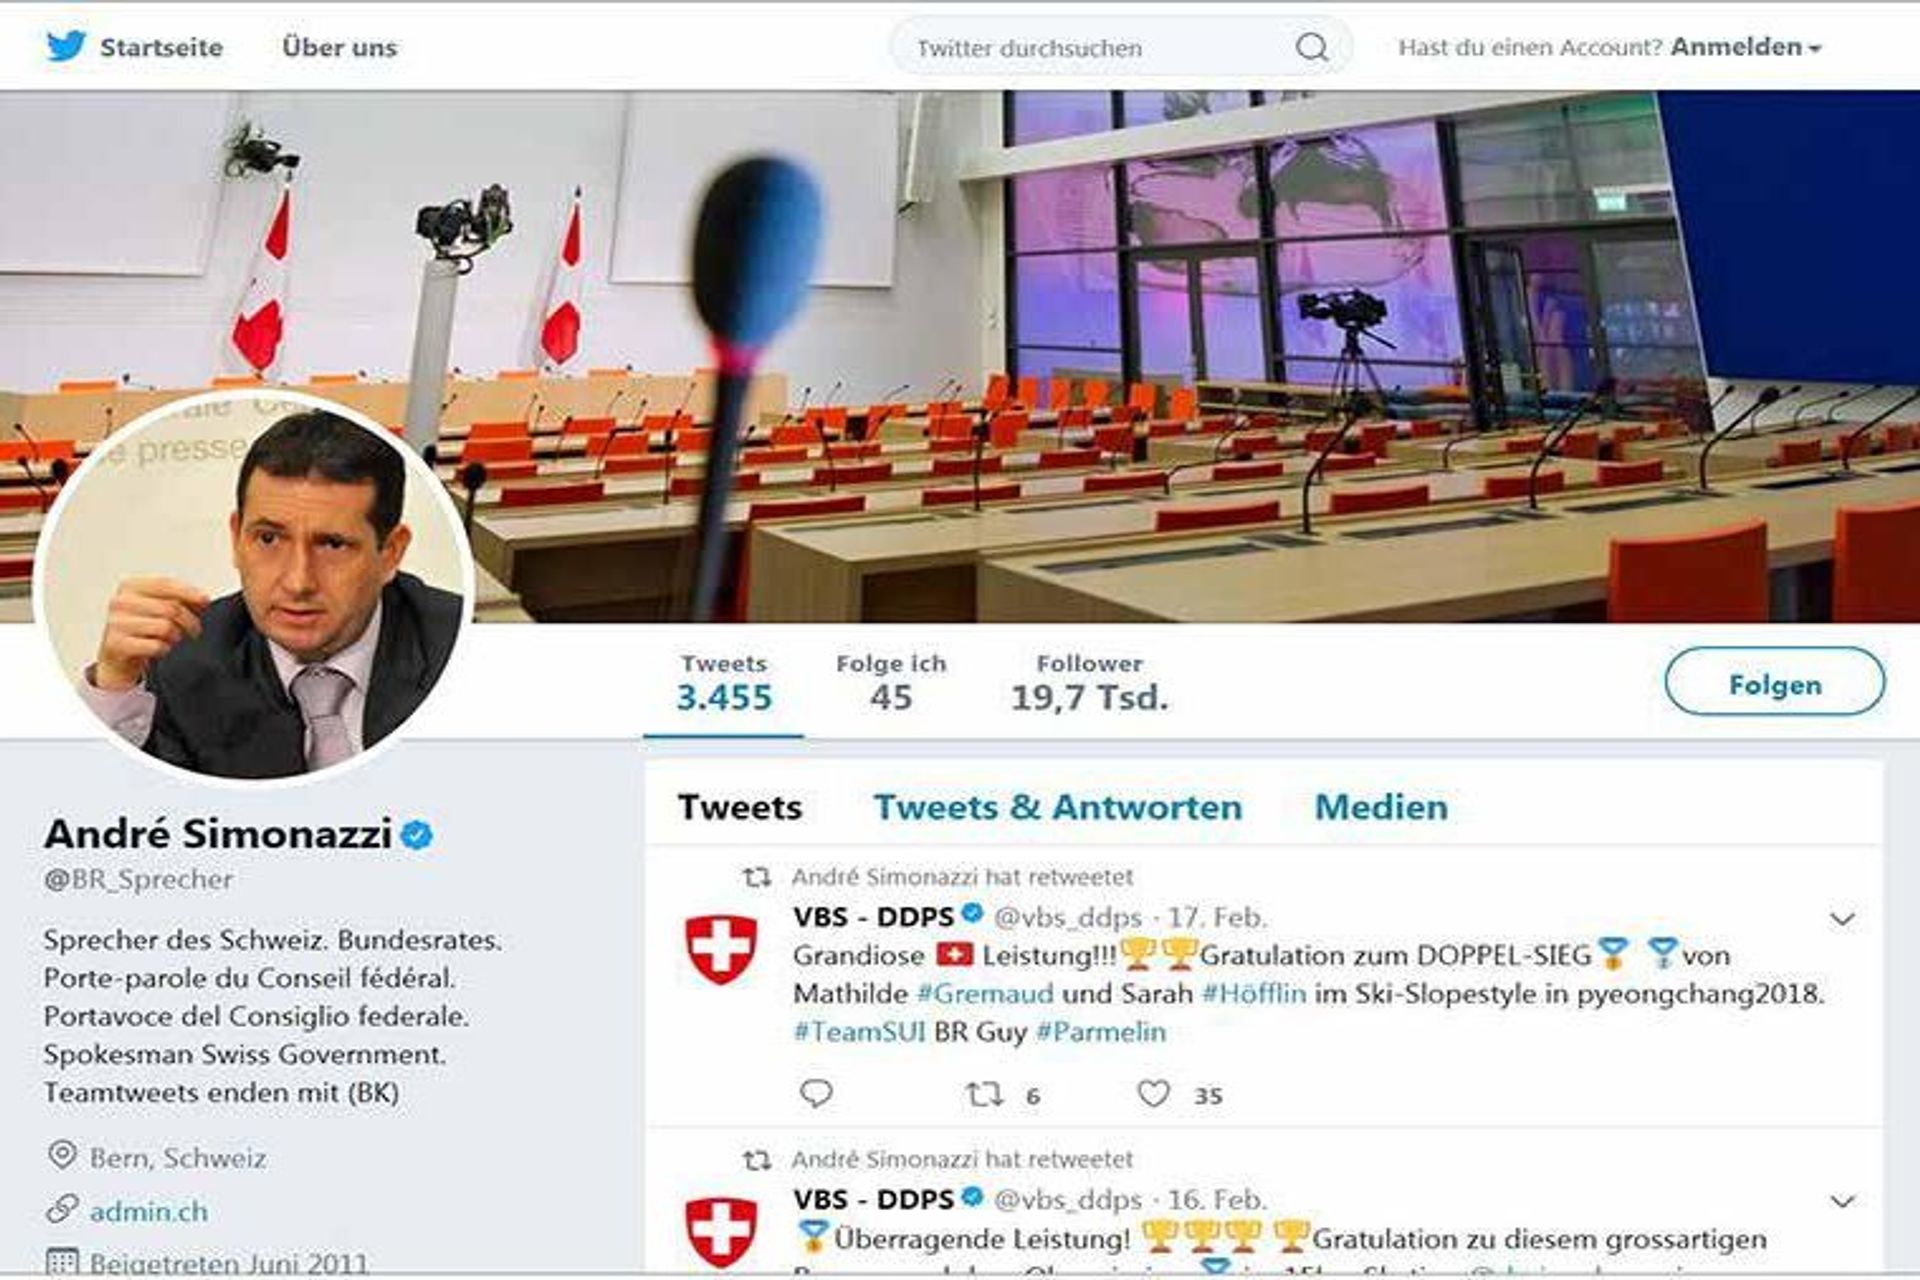 L'identità visiva della Confederazione Svizzera per il social media Twitter